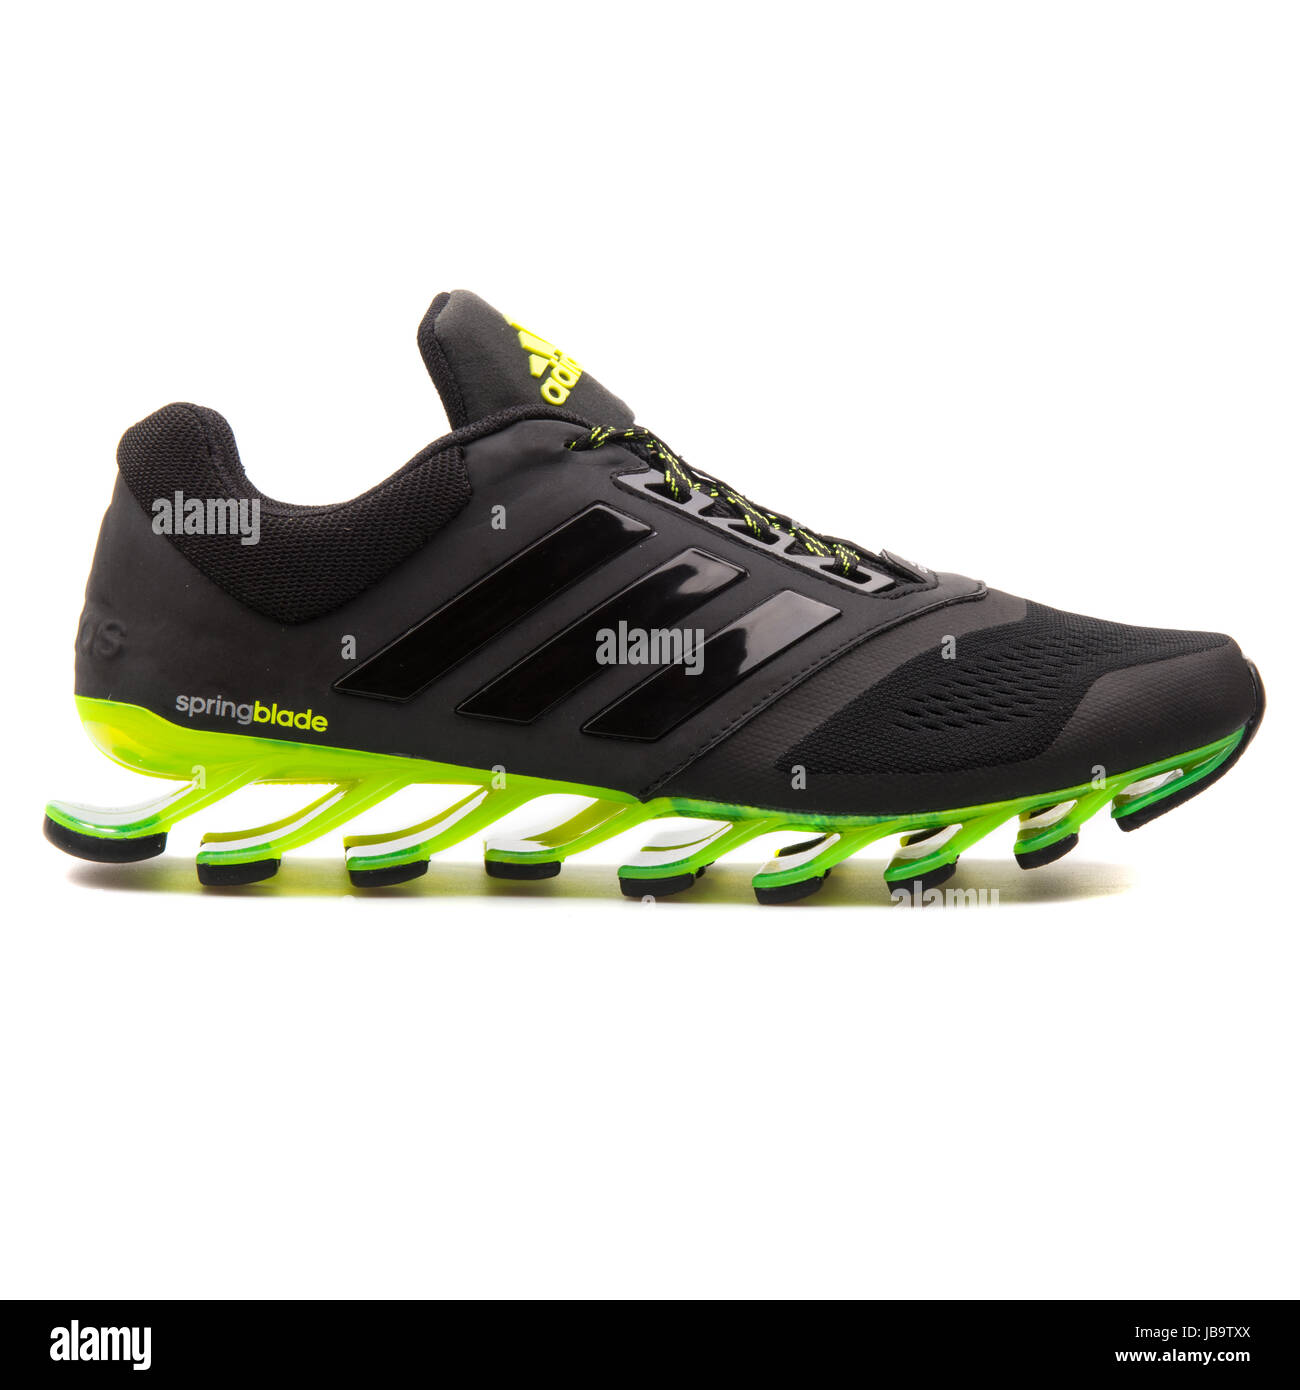 Adidas Drive 2 m negro y verde, Los hombres ejecutan Sneakers - D69684 Fotografía de stock -